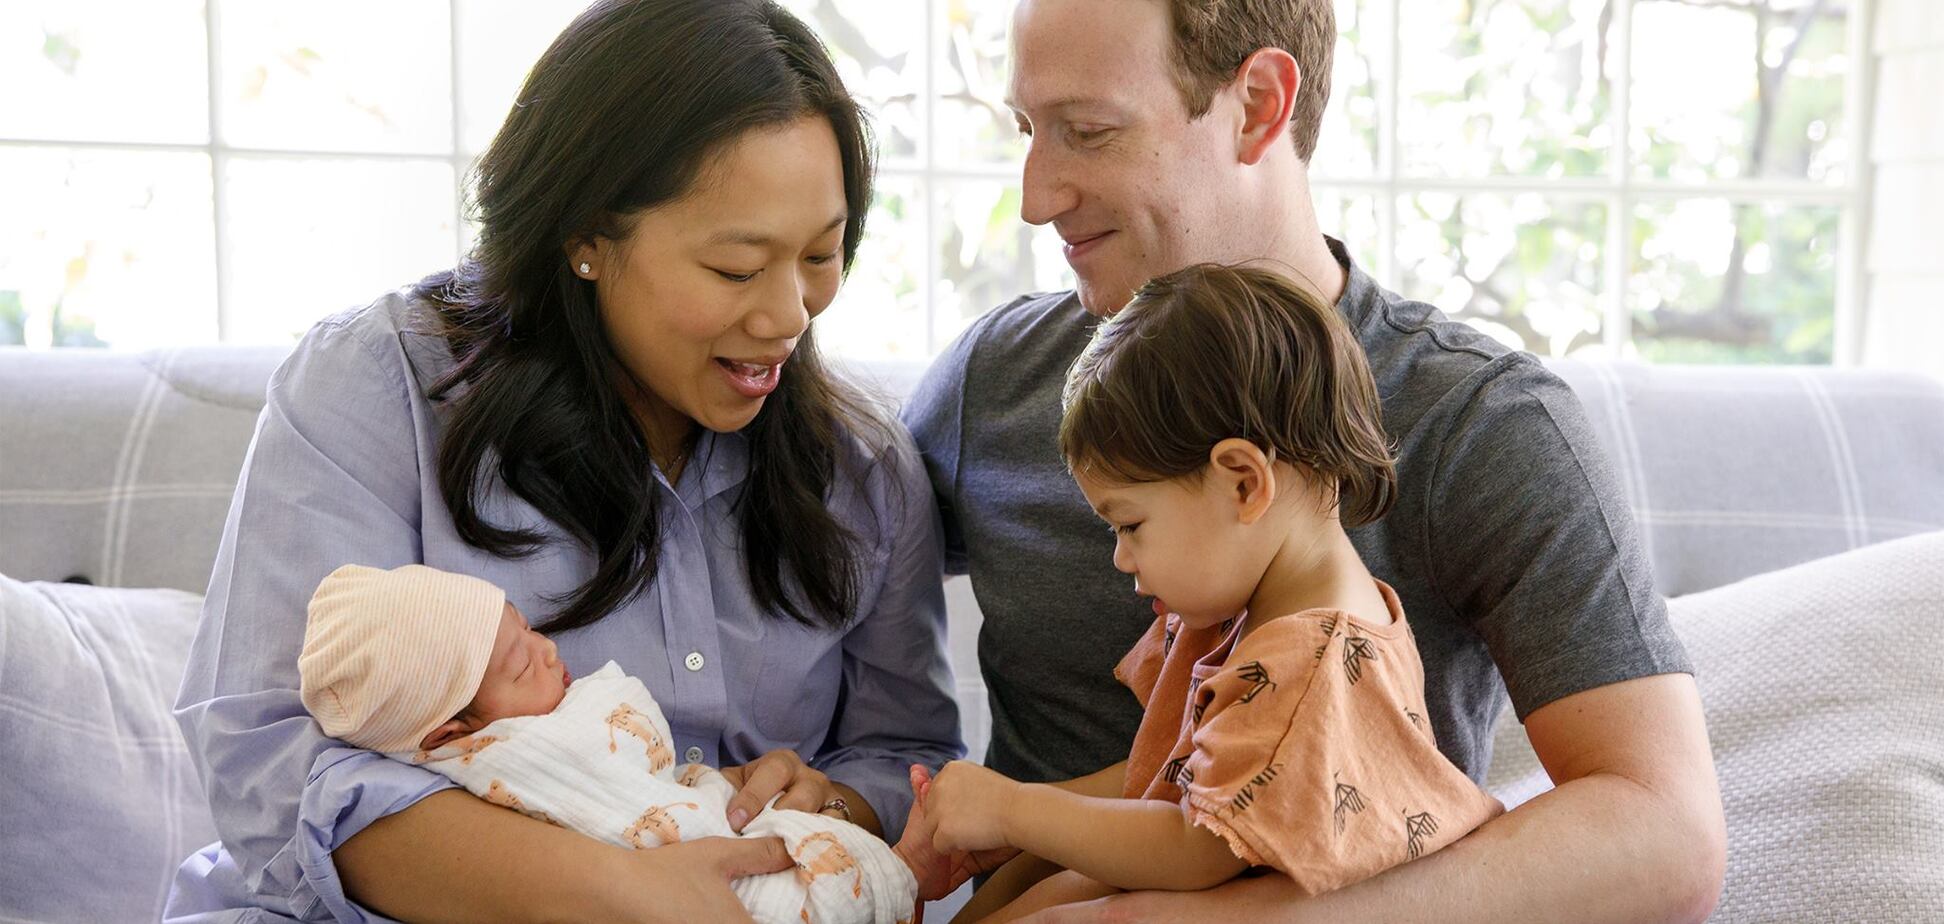 У Цукерберга родился второй ребенок: основатель Facebook поделился трогательным фото